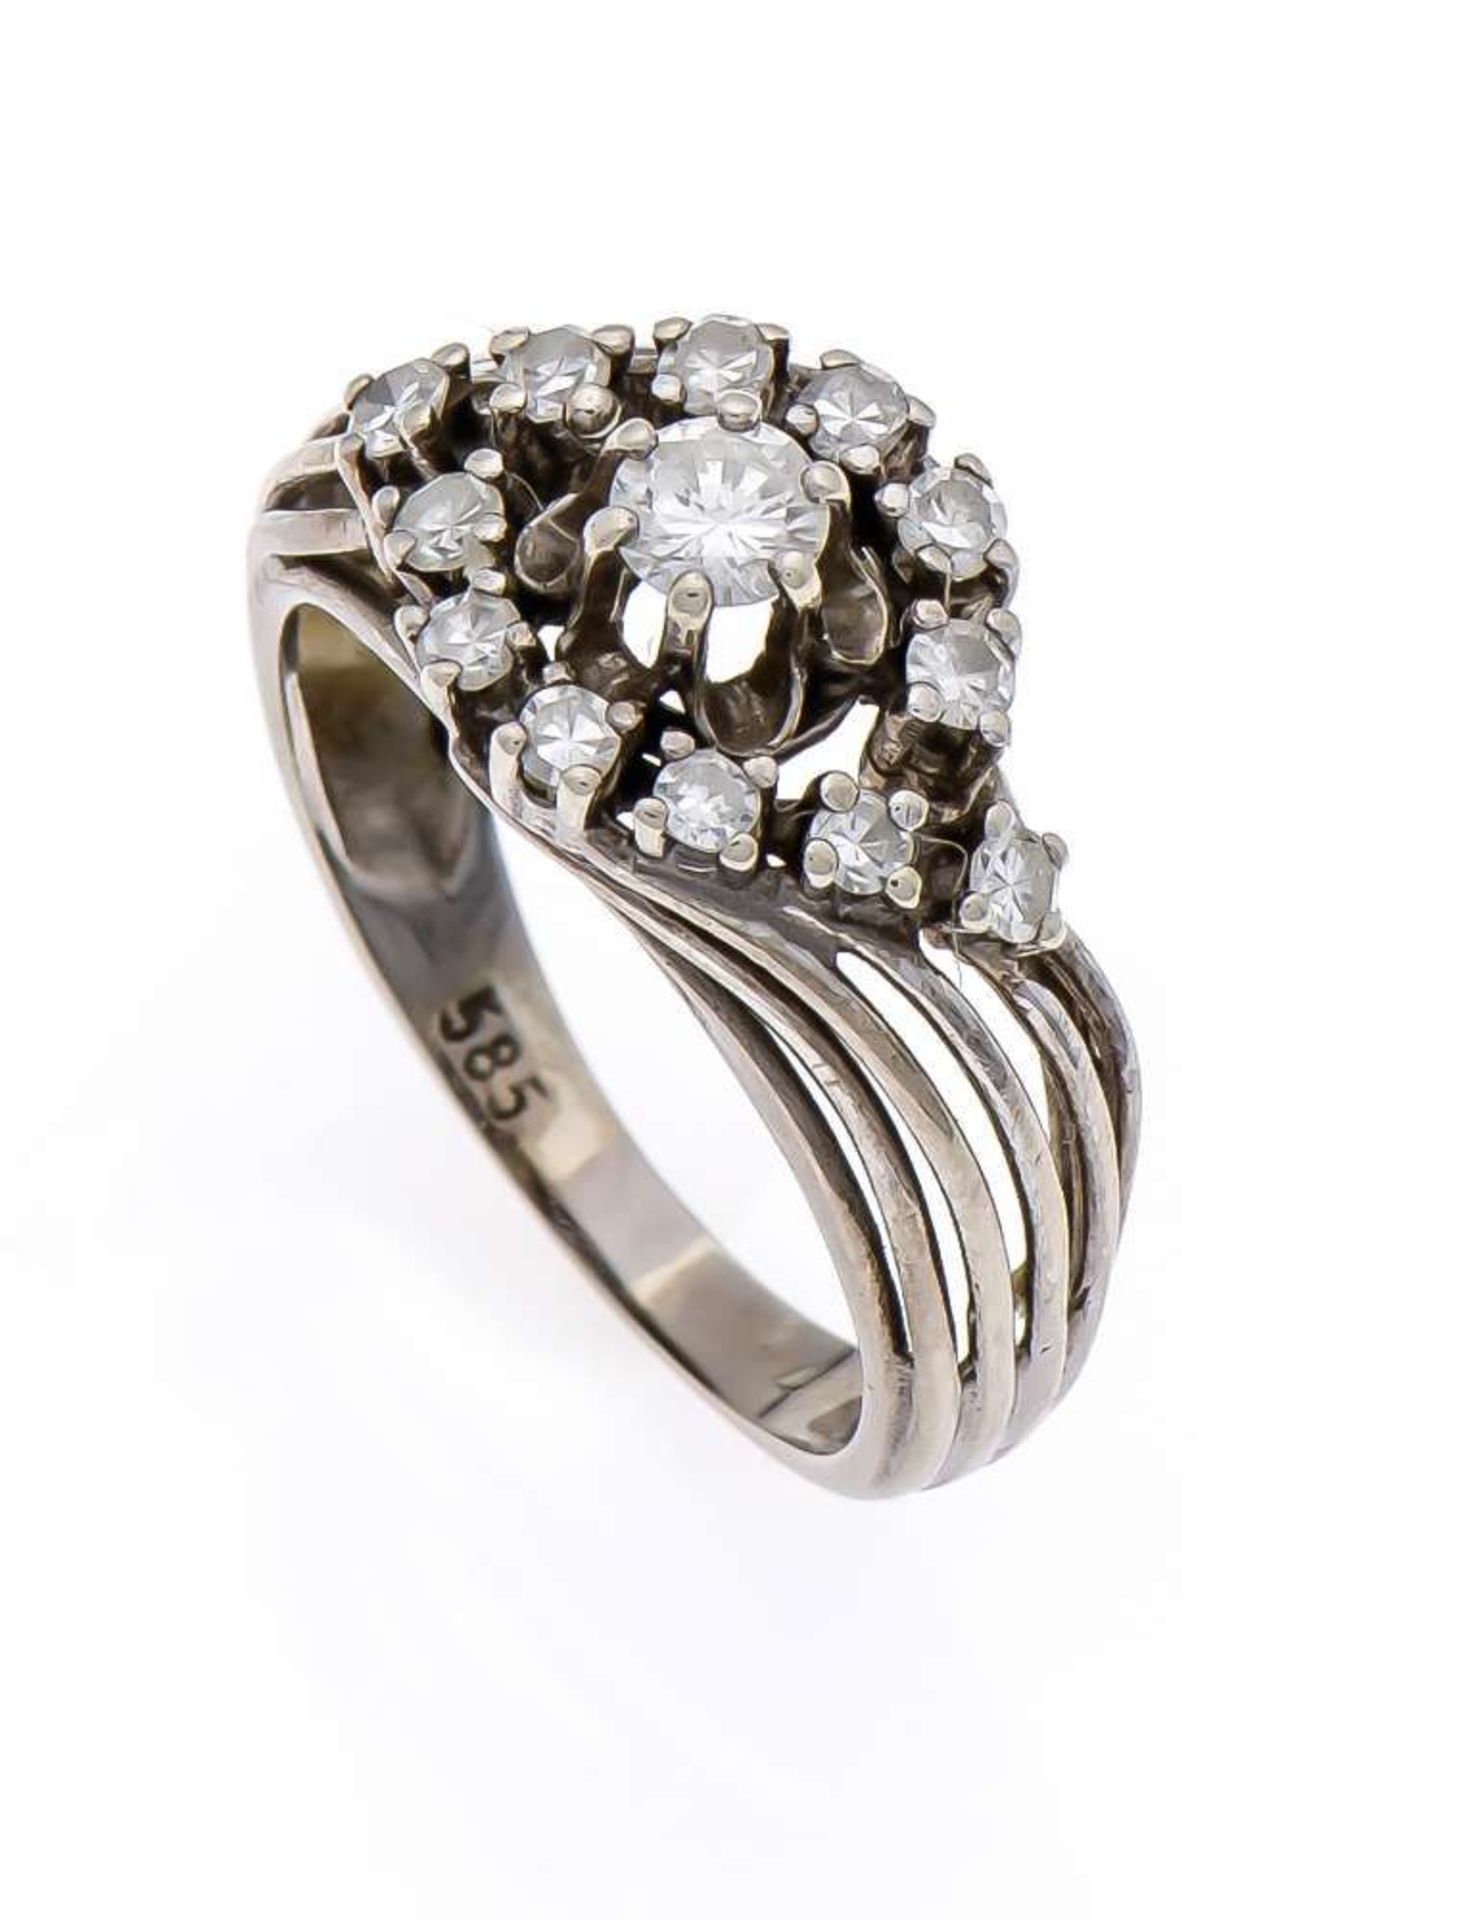 Brillant-Ring GG/WG 585/000 mit einem Brillanten und 12 Diamanten, zus. 0,40 ct W/SI, RG 56, 4,2 g